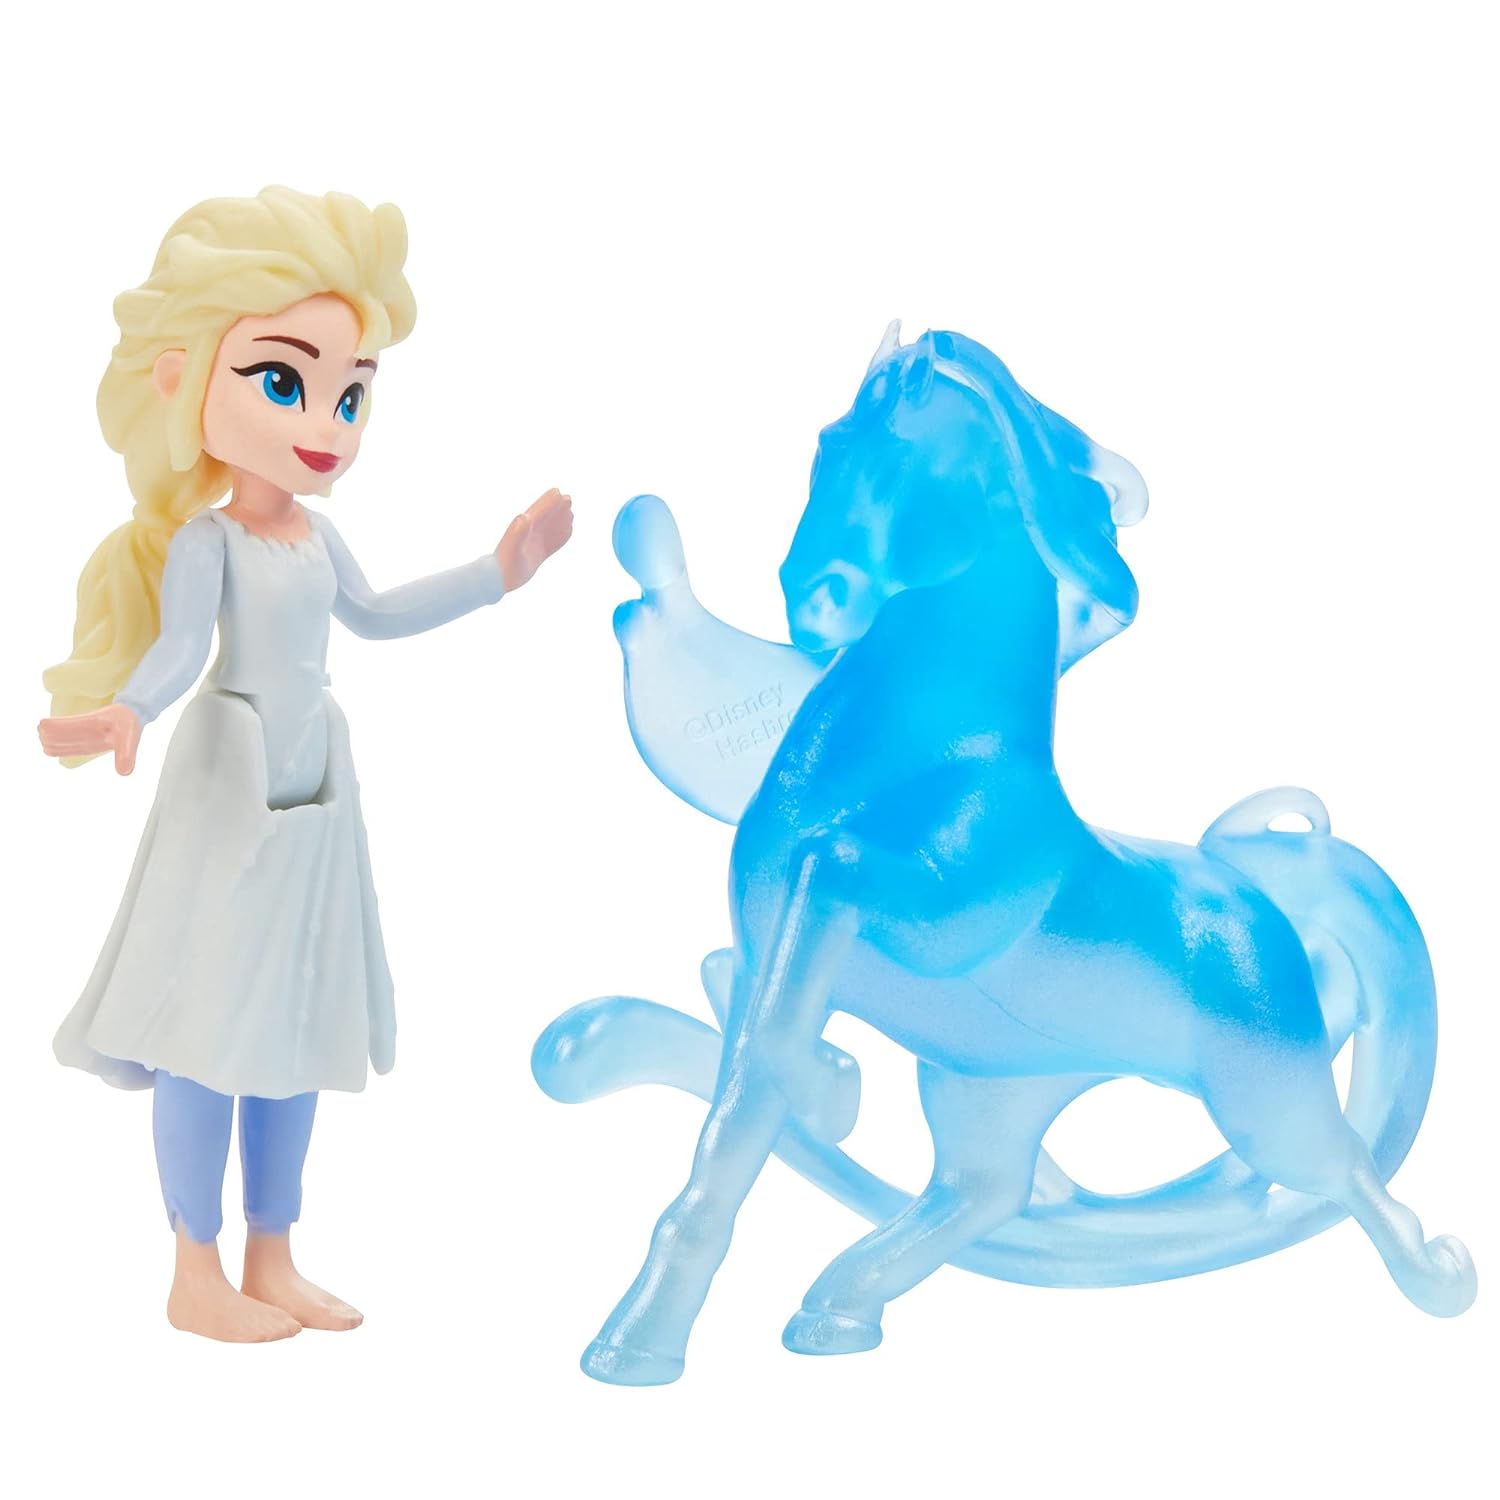 Hasbro WMT Frozen 2 Peel and Reveal Play Set